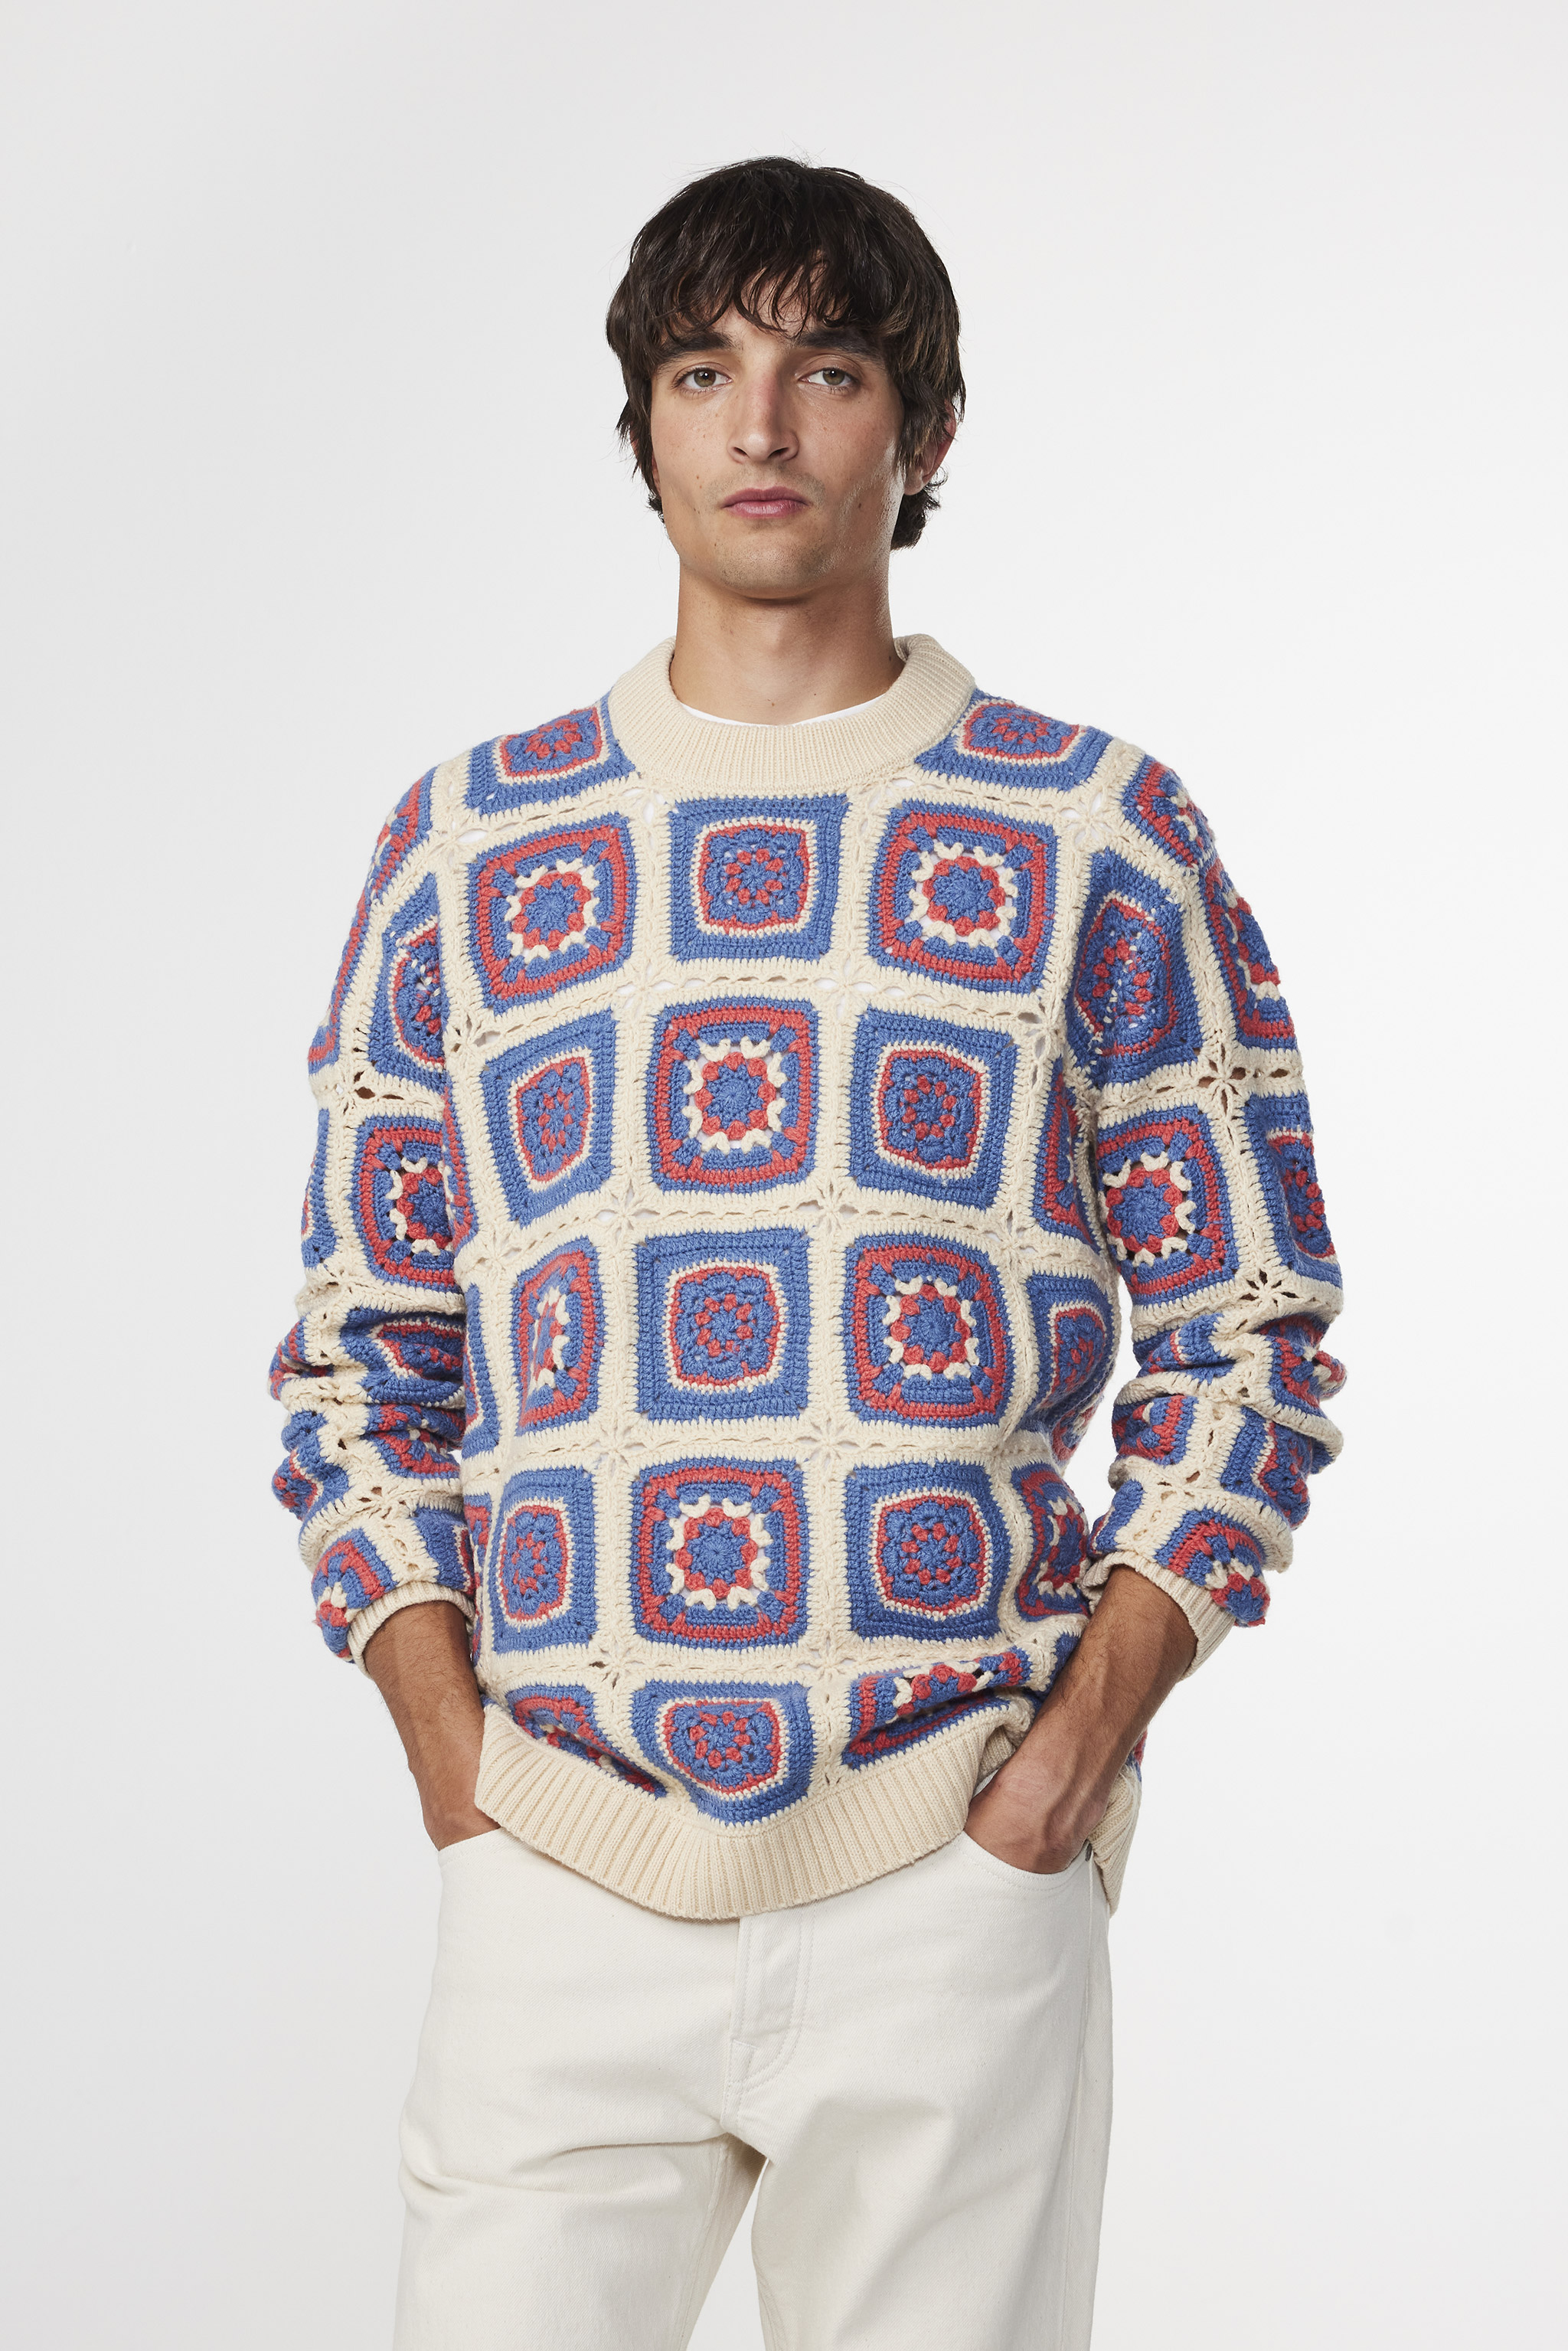 Crochet Crew 6523 men's sweater - White - Buy online at NN.07®